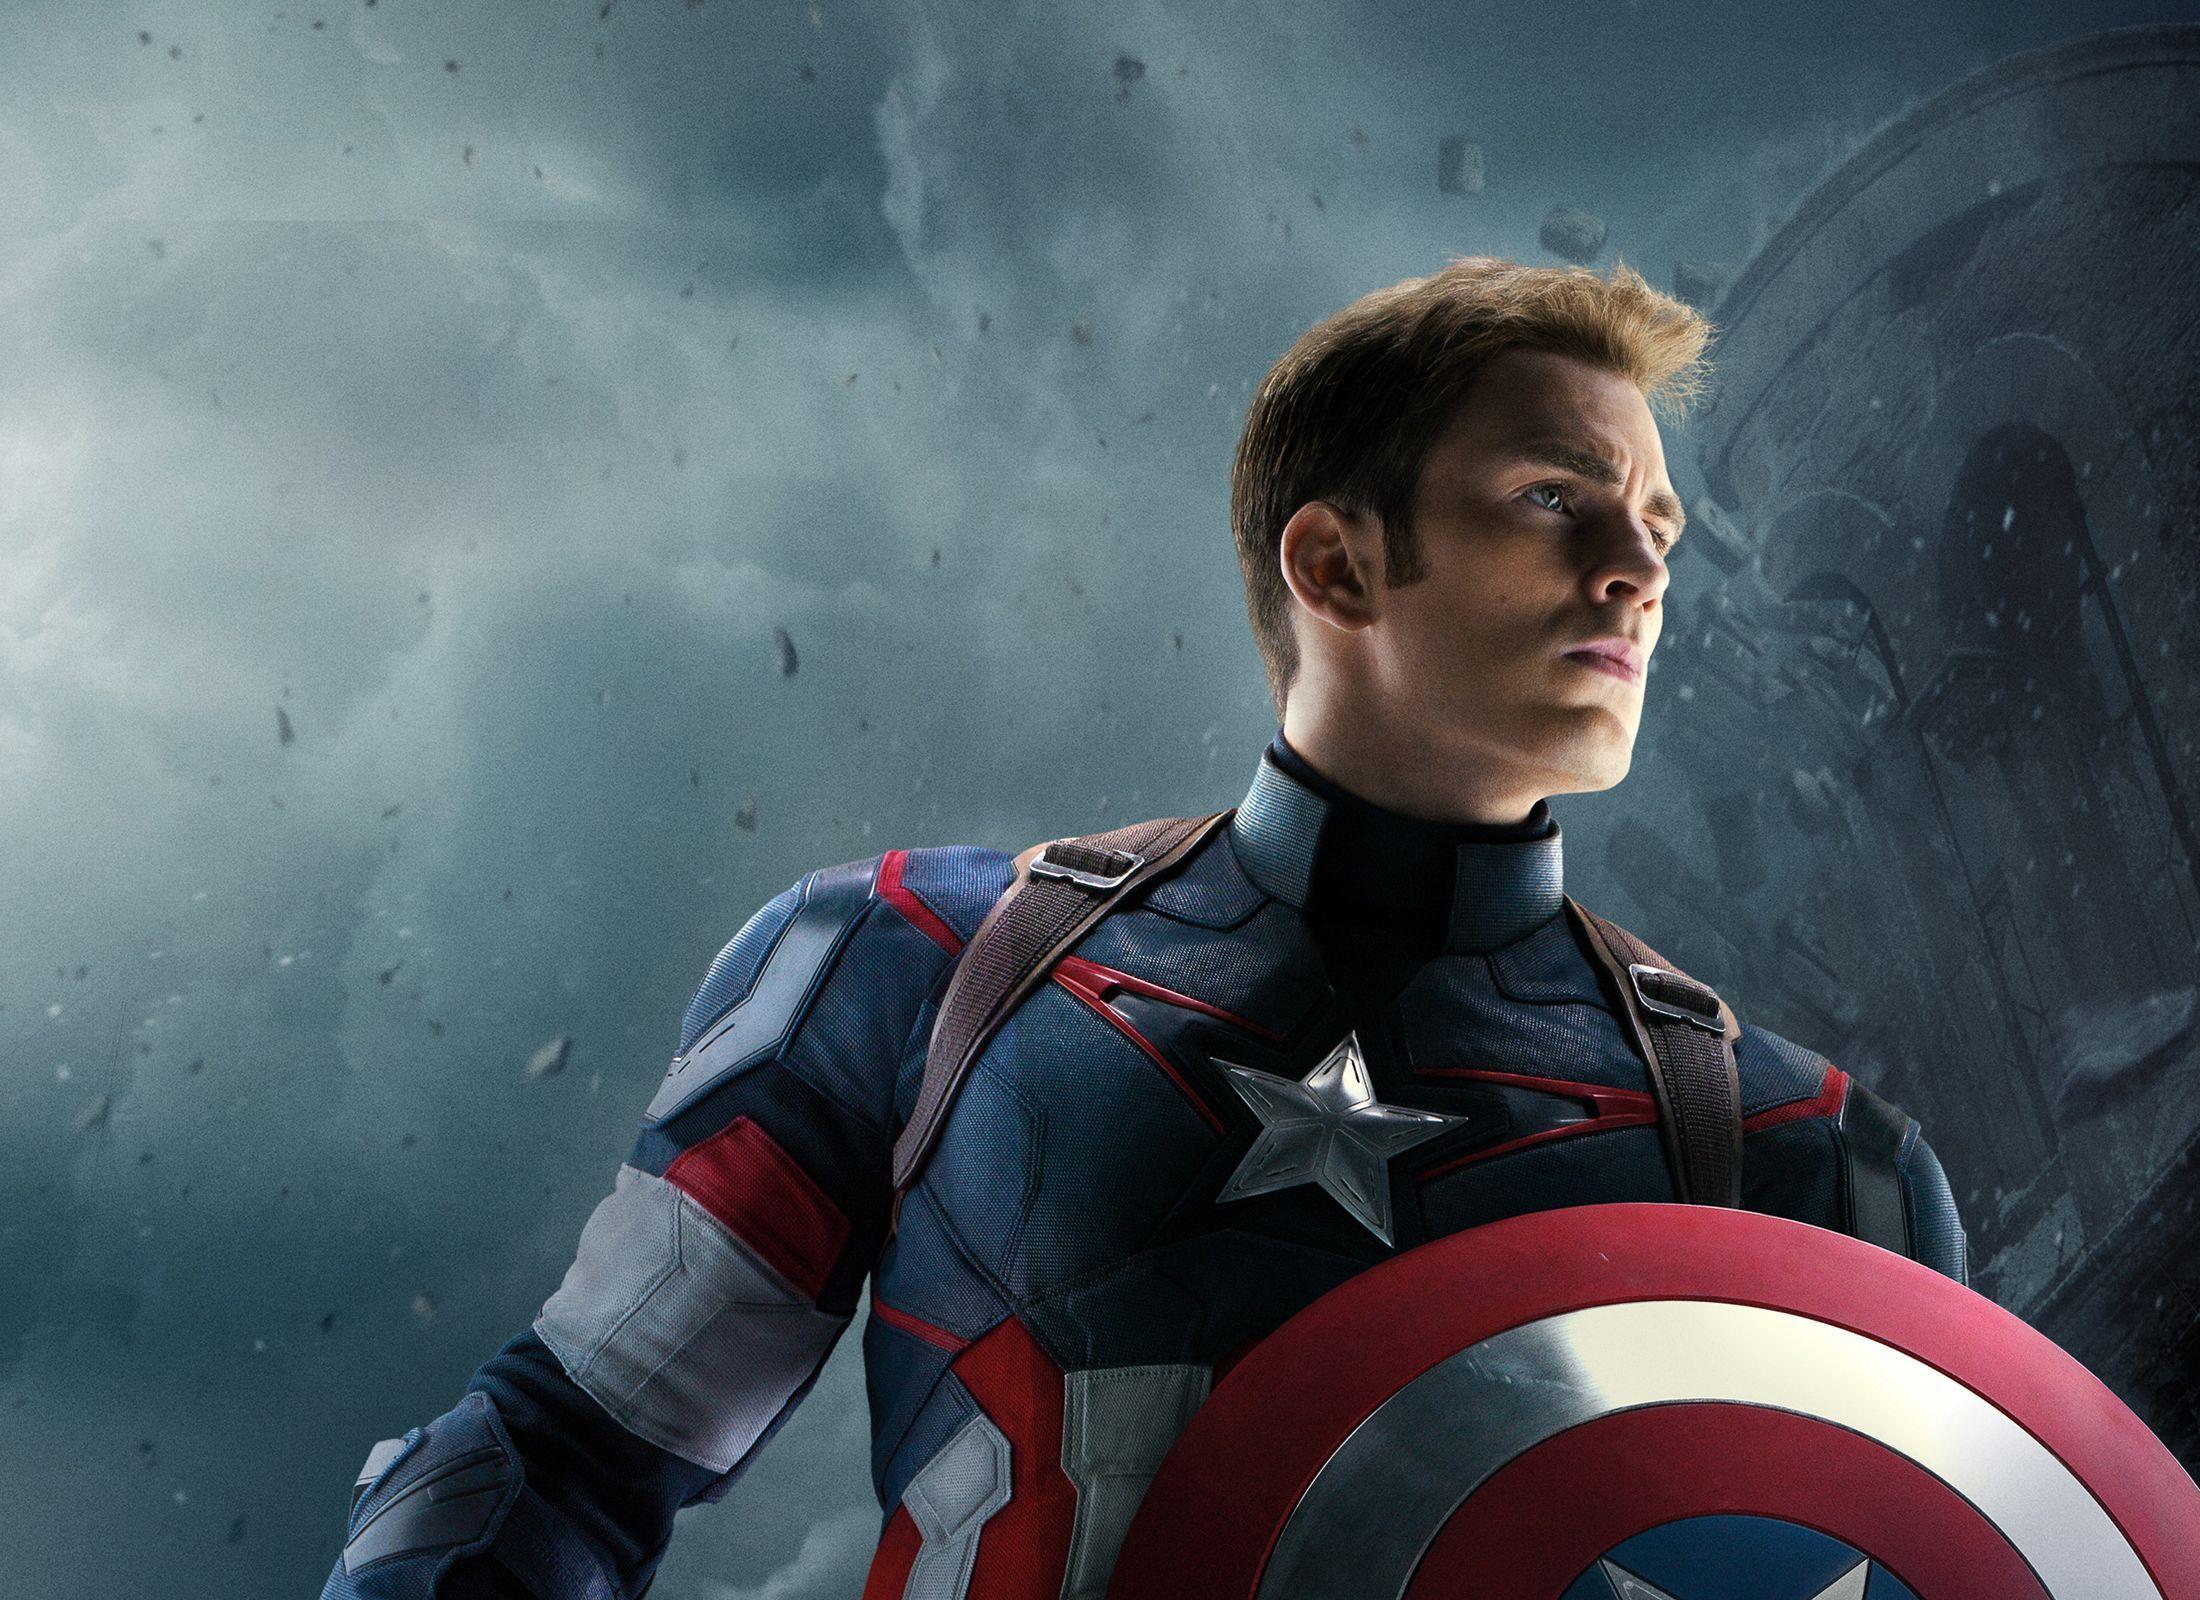 The Avengers Captain America HD Wallpaper. wallpaper. Captain